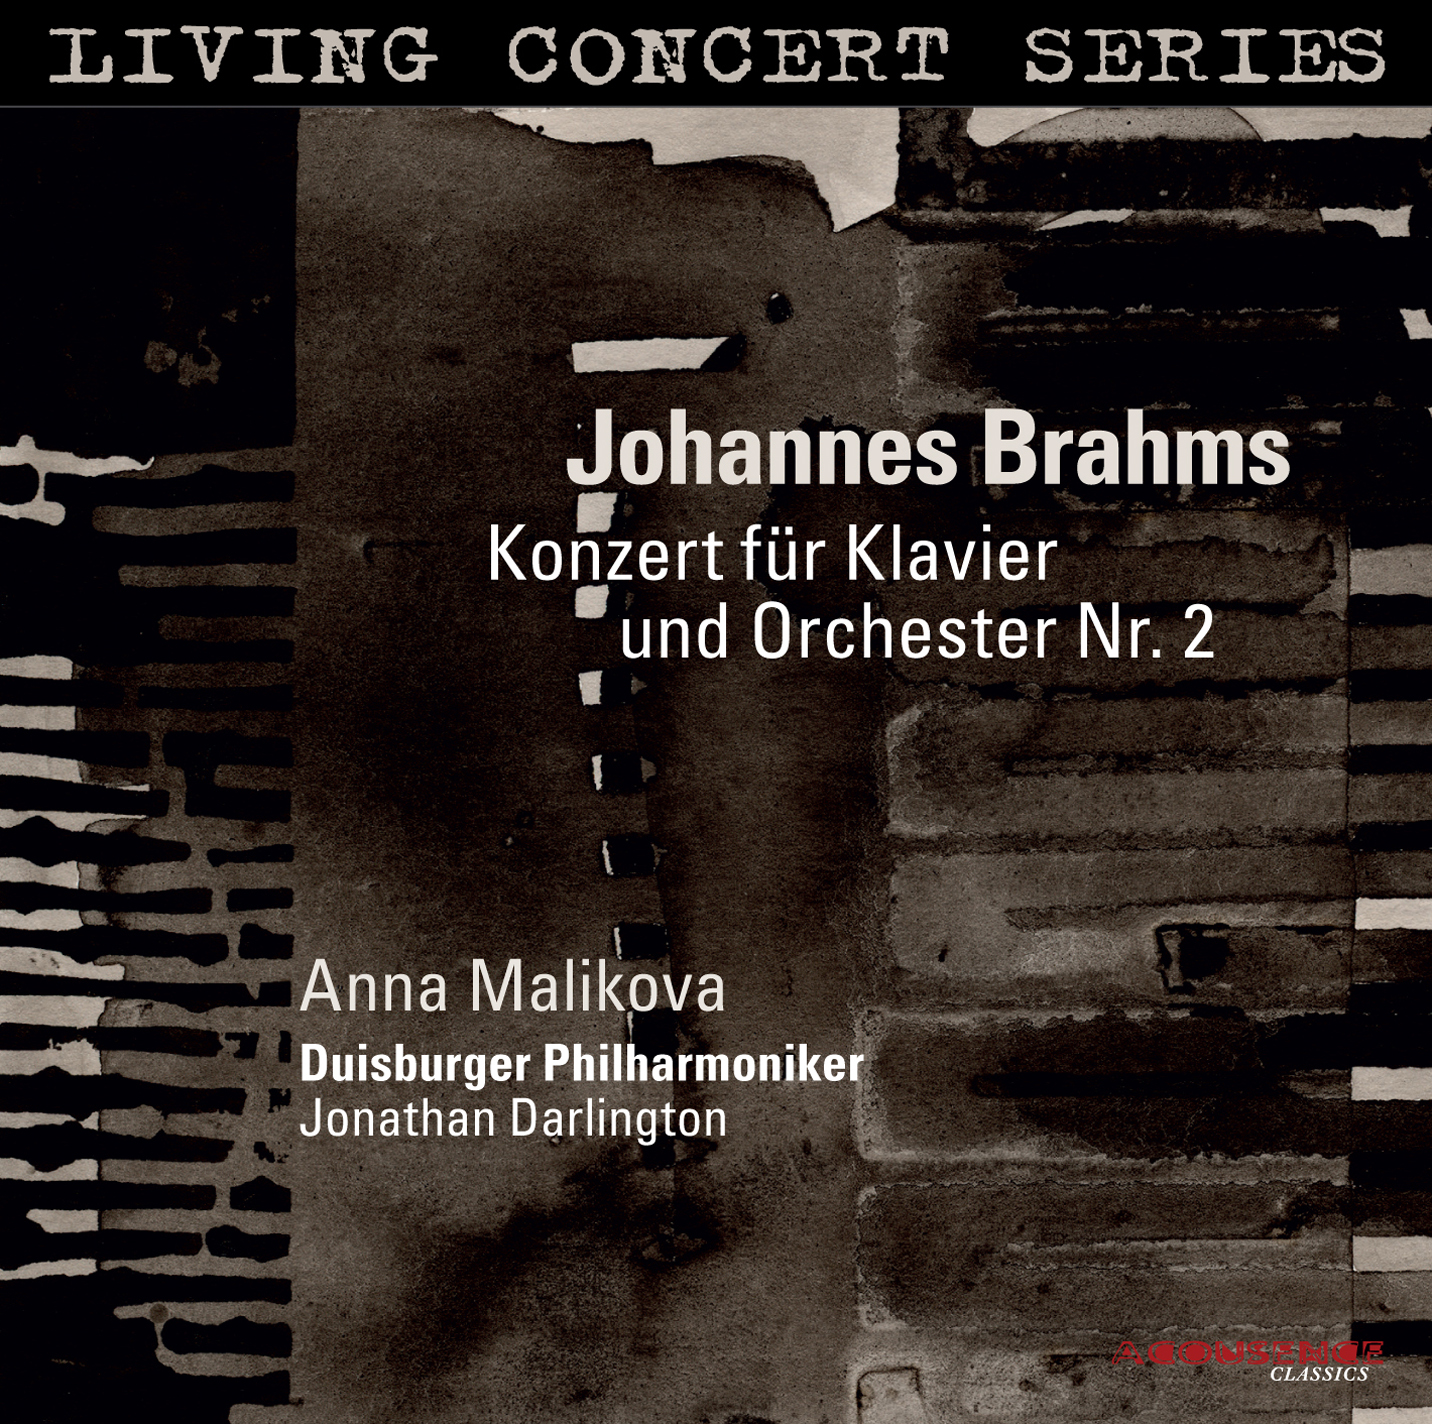 Piano Concerto No 2 Brahms - Wikipedia